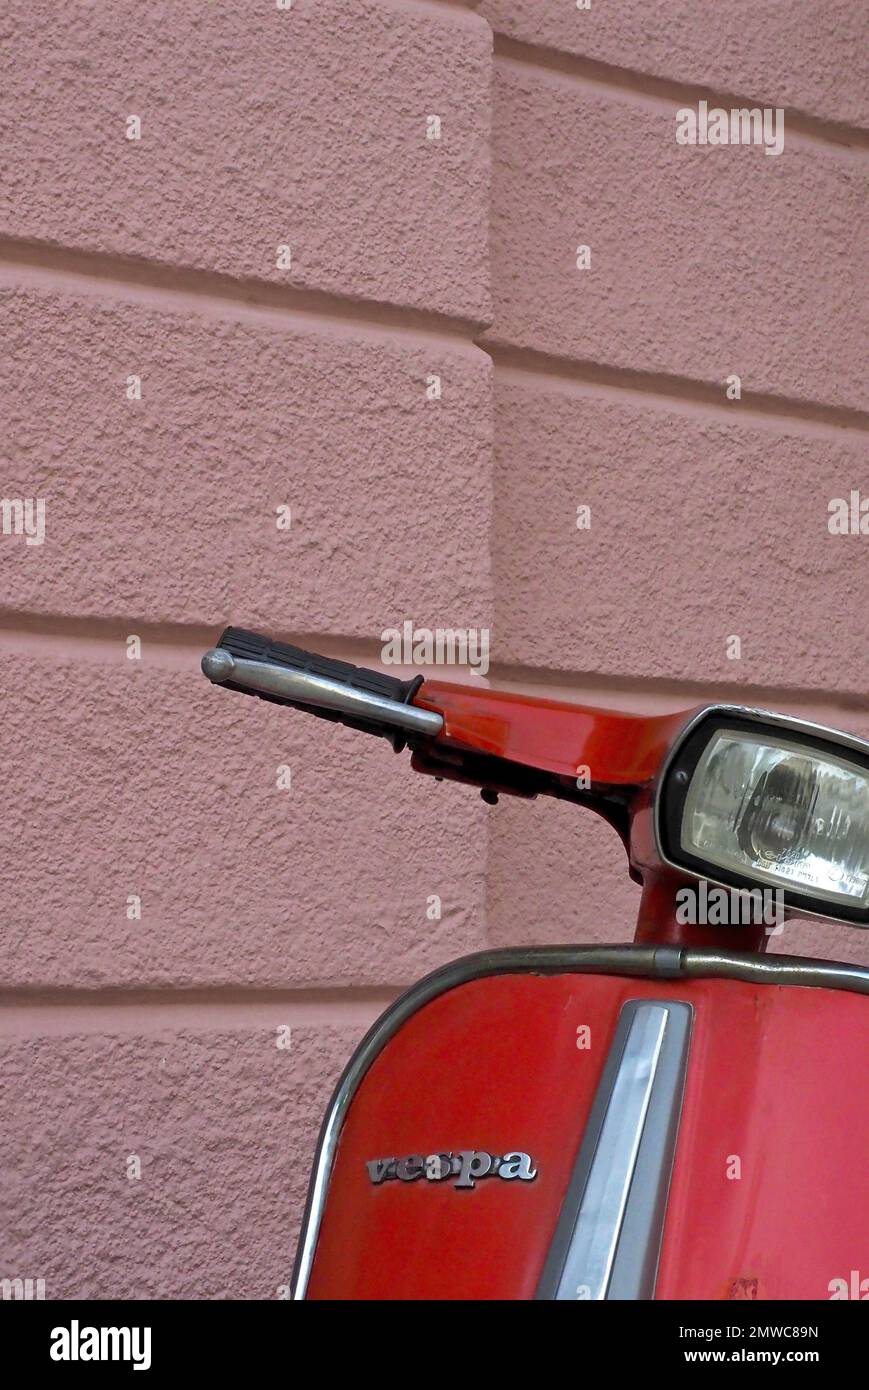 Manubri e parte anteriore di uno scooter rosso davanti a una parete rosa della casa, Vespa, Svizzera Foto Stock